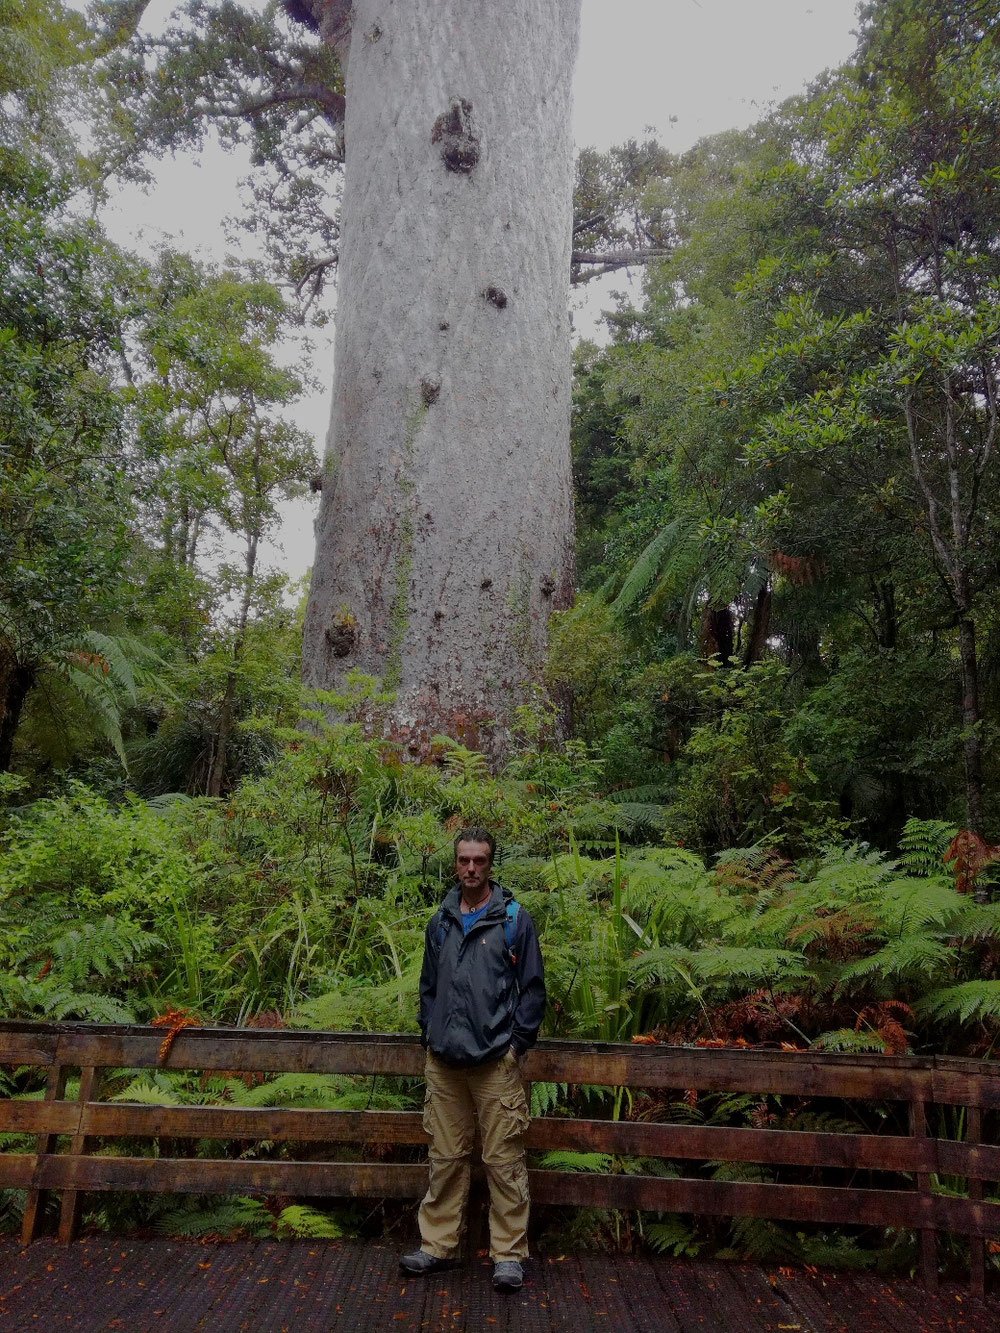 Tane Mahuta, ein Kauri-Baum, der größte Baum Neuseelands. Ein wahrhafter Riese, dessen Maße die Fotos kaum erklären können.